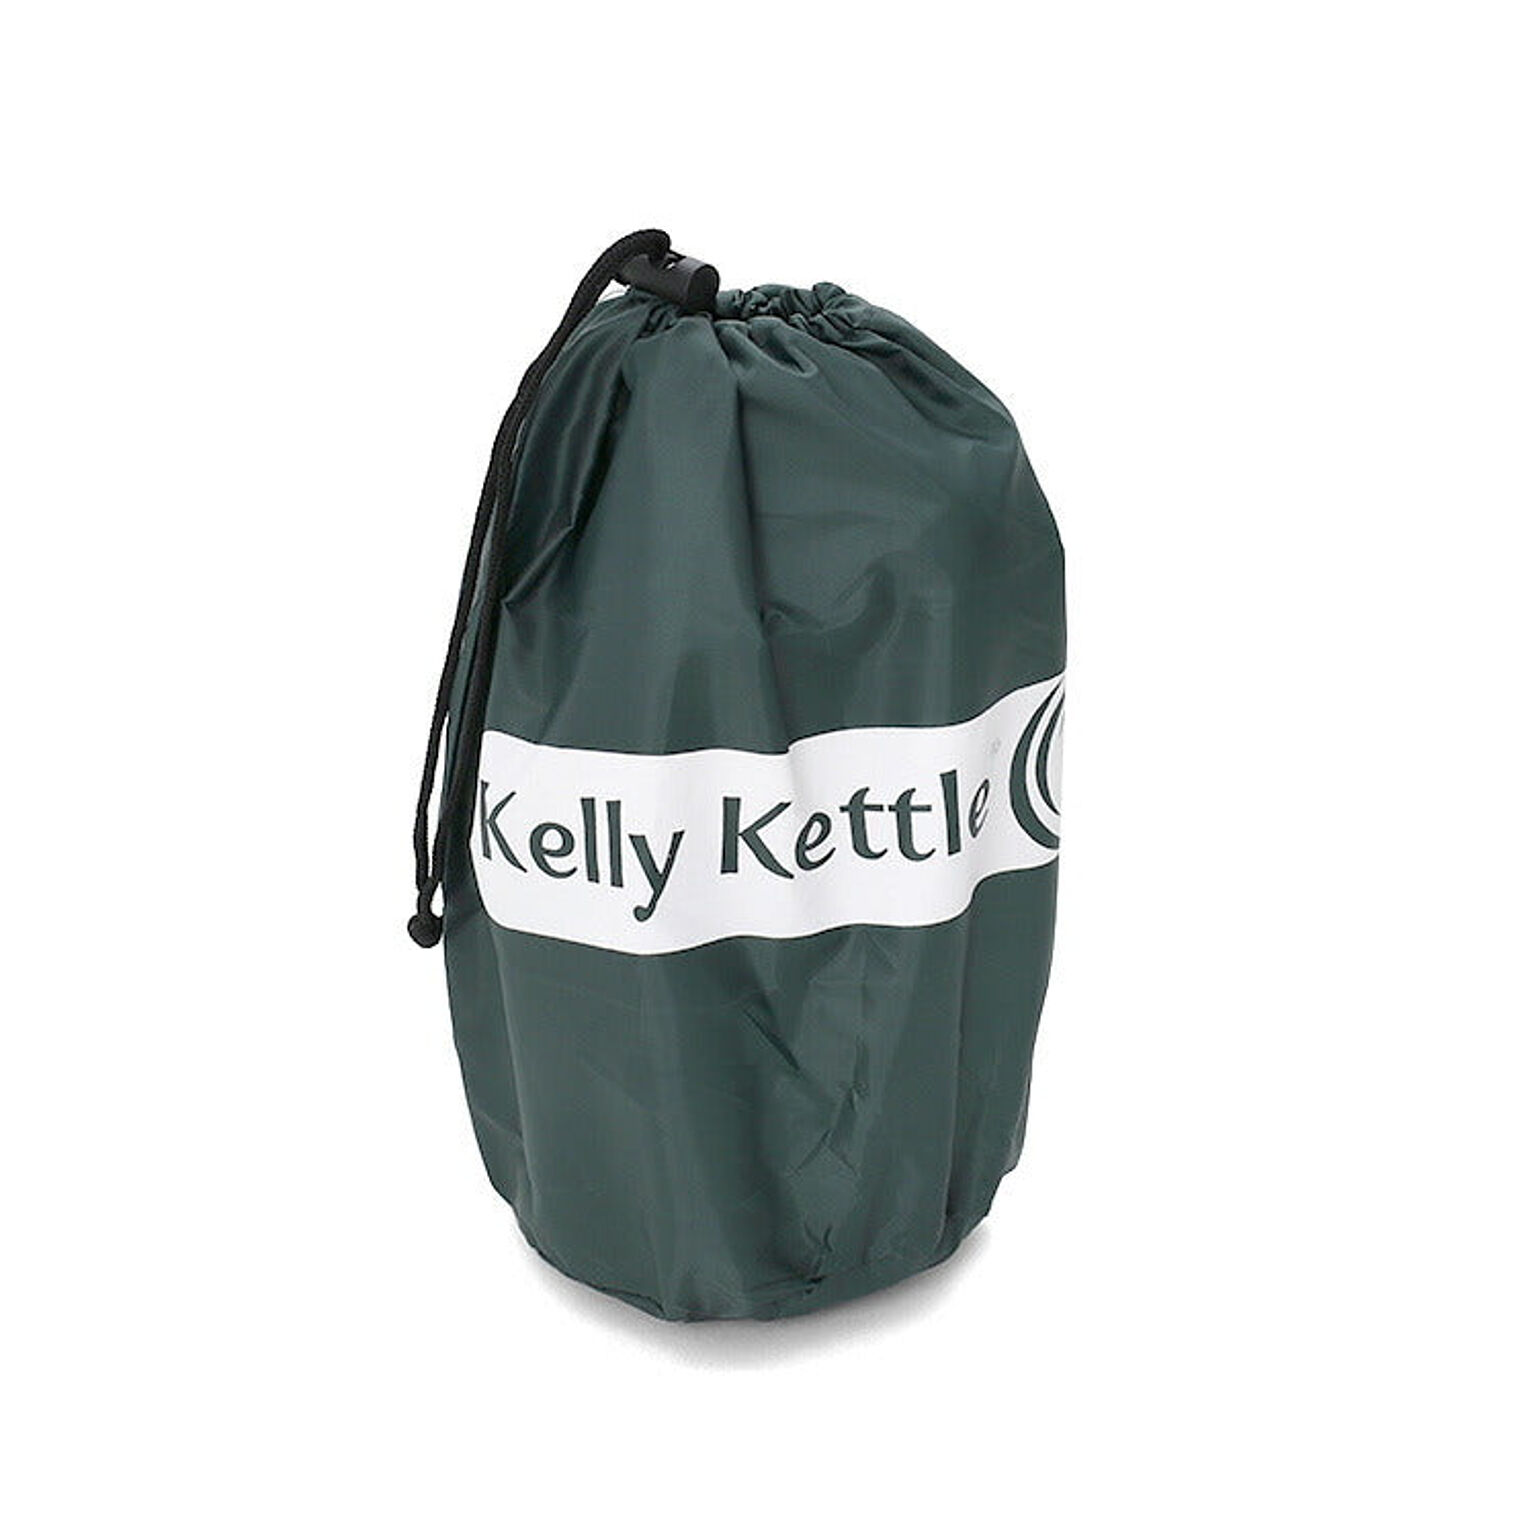 ケリーケトル トレッカー キット 0.6L Kelly Kettle 通販 家具とインテリアの通販【RoomClipショッピング】